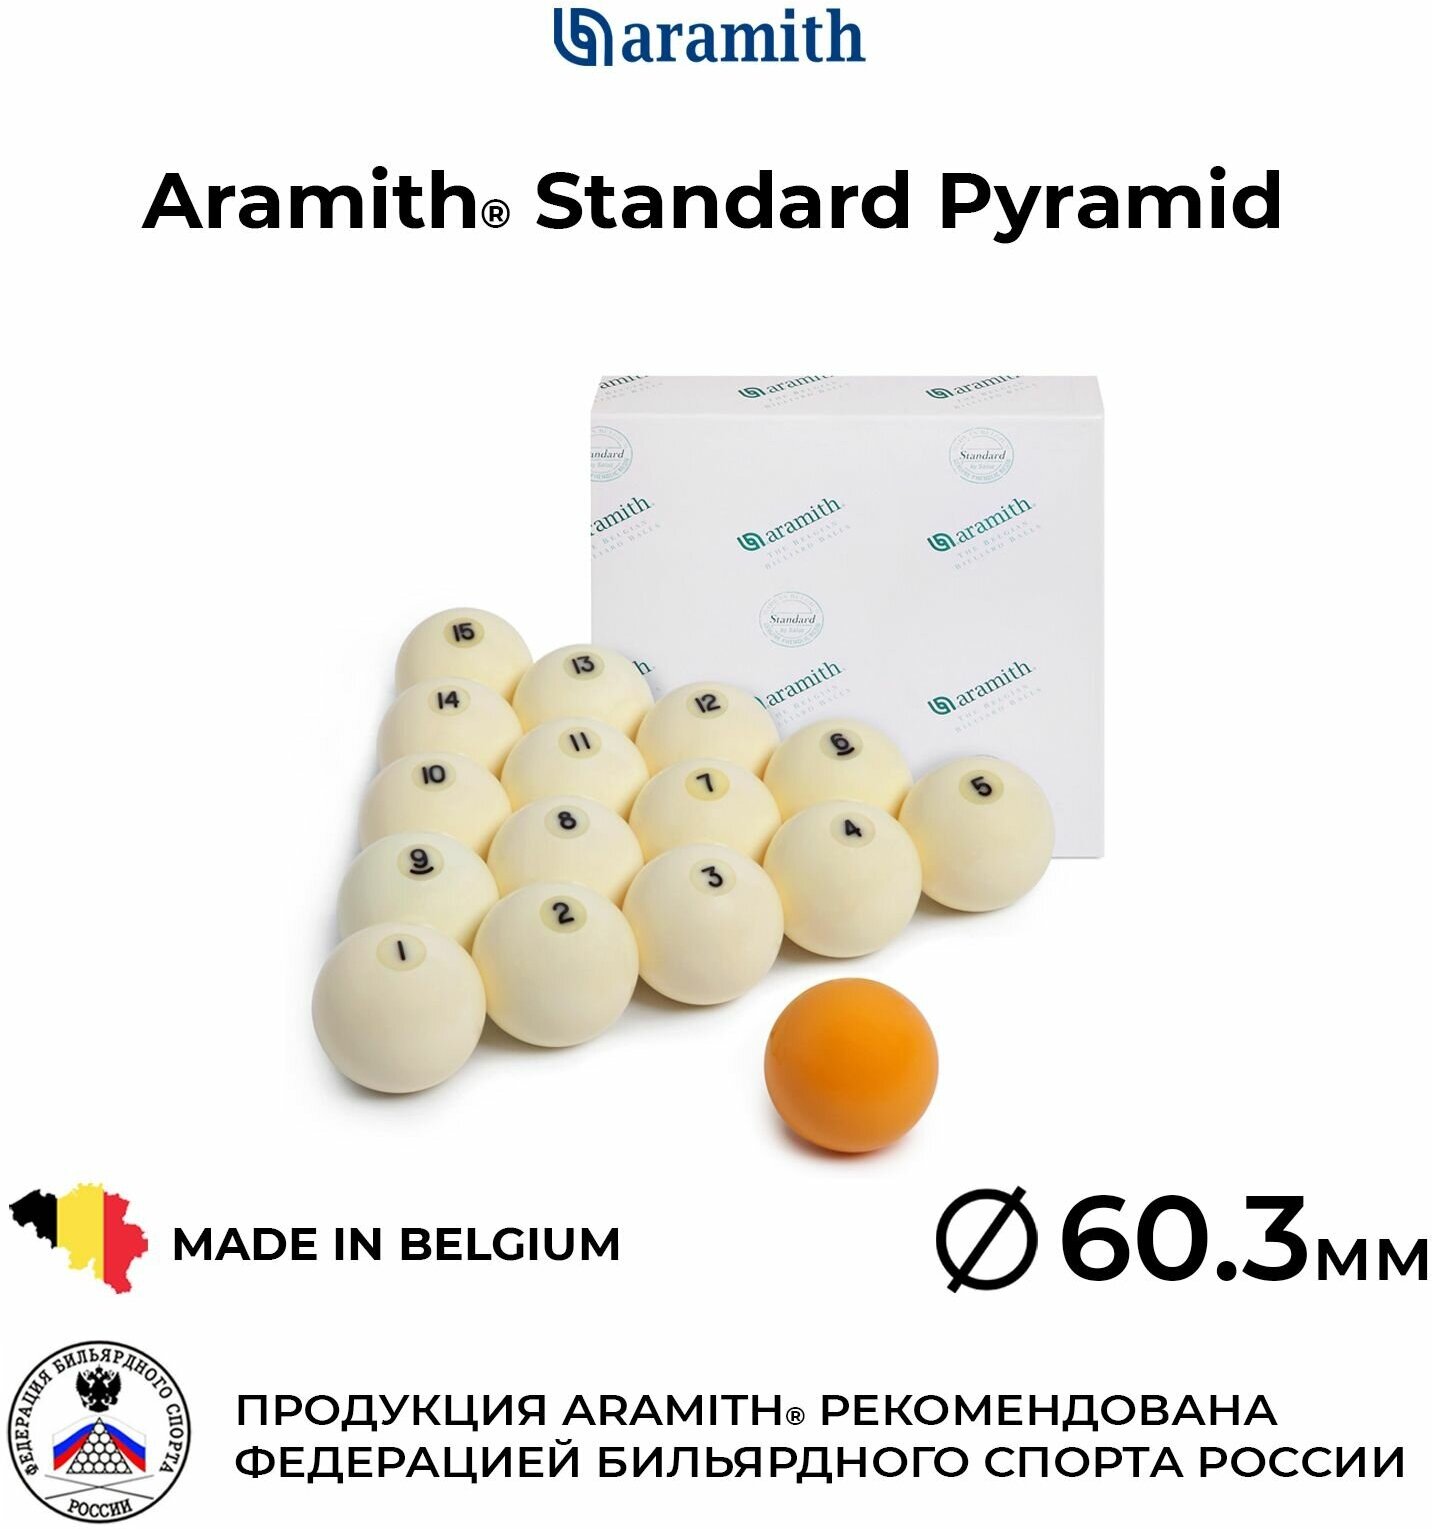 Бильярдные шары Арамит Стандард 60,3 мм для русской пирамиды / Aramith Standard Pyramid 60,3 мм 16шт. желтый биток